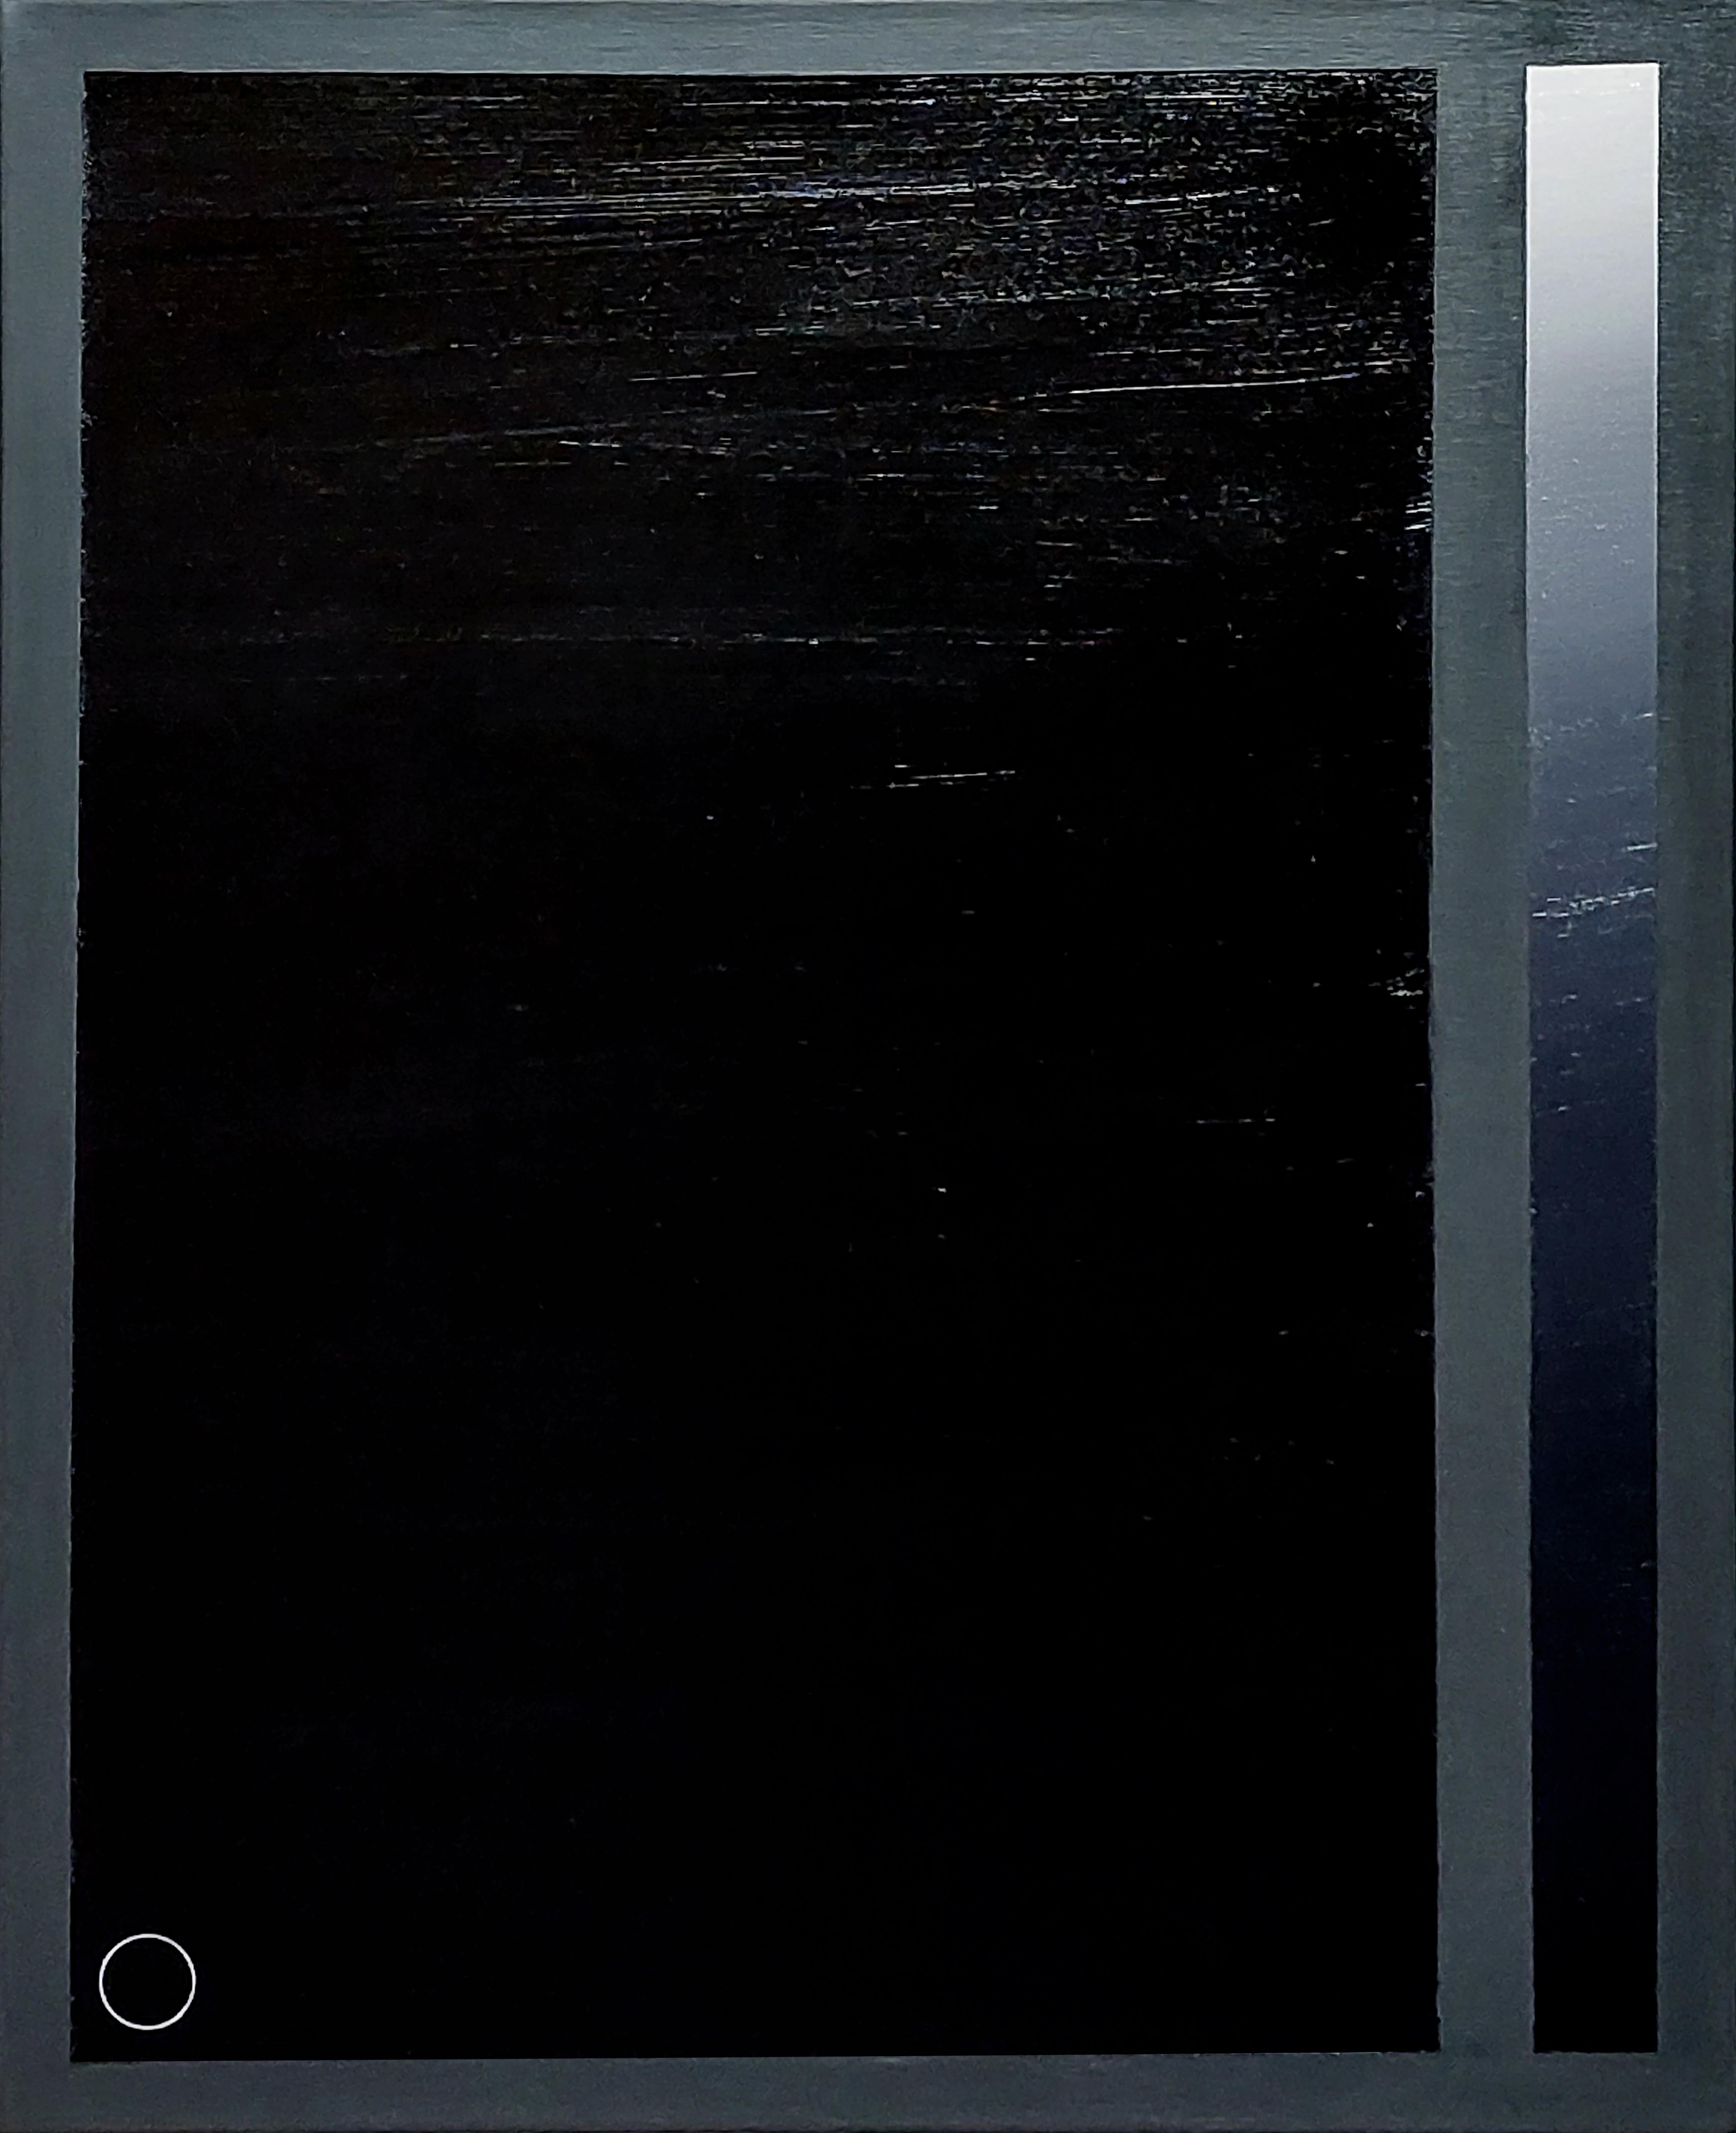  Blauer Würfel und schwarzer Glitzerkübel in Blauton. Aus der Serie The Light – Painting von Jose Ricardo Contreras Gonzalez